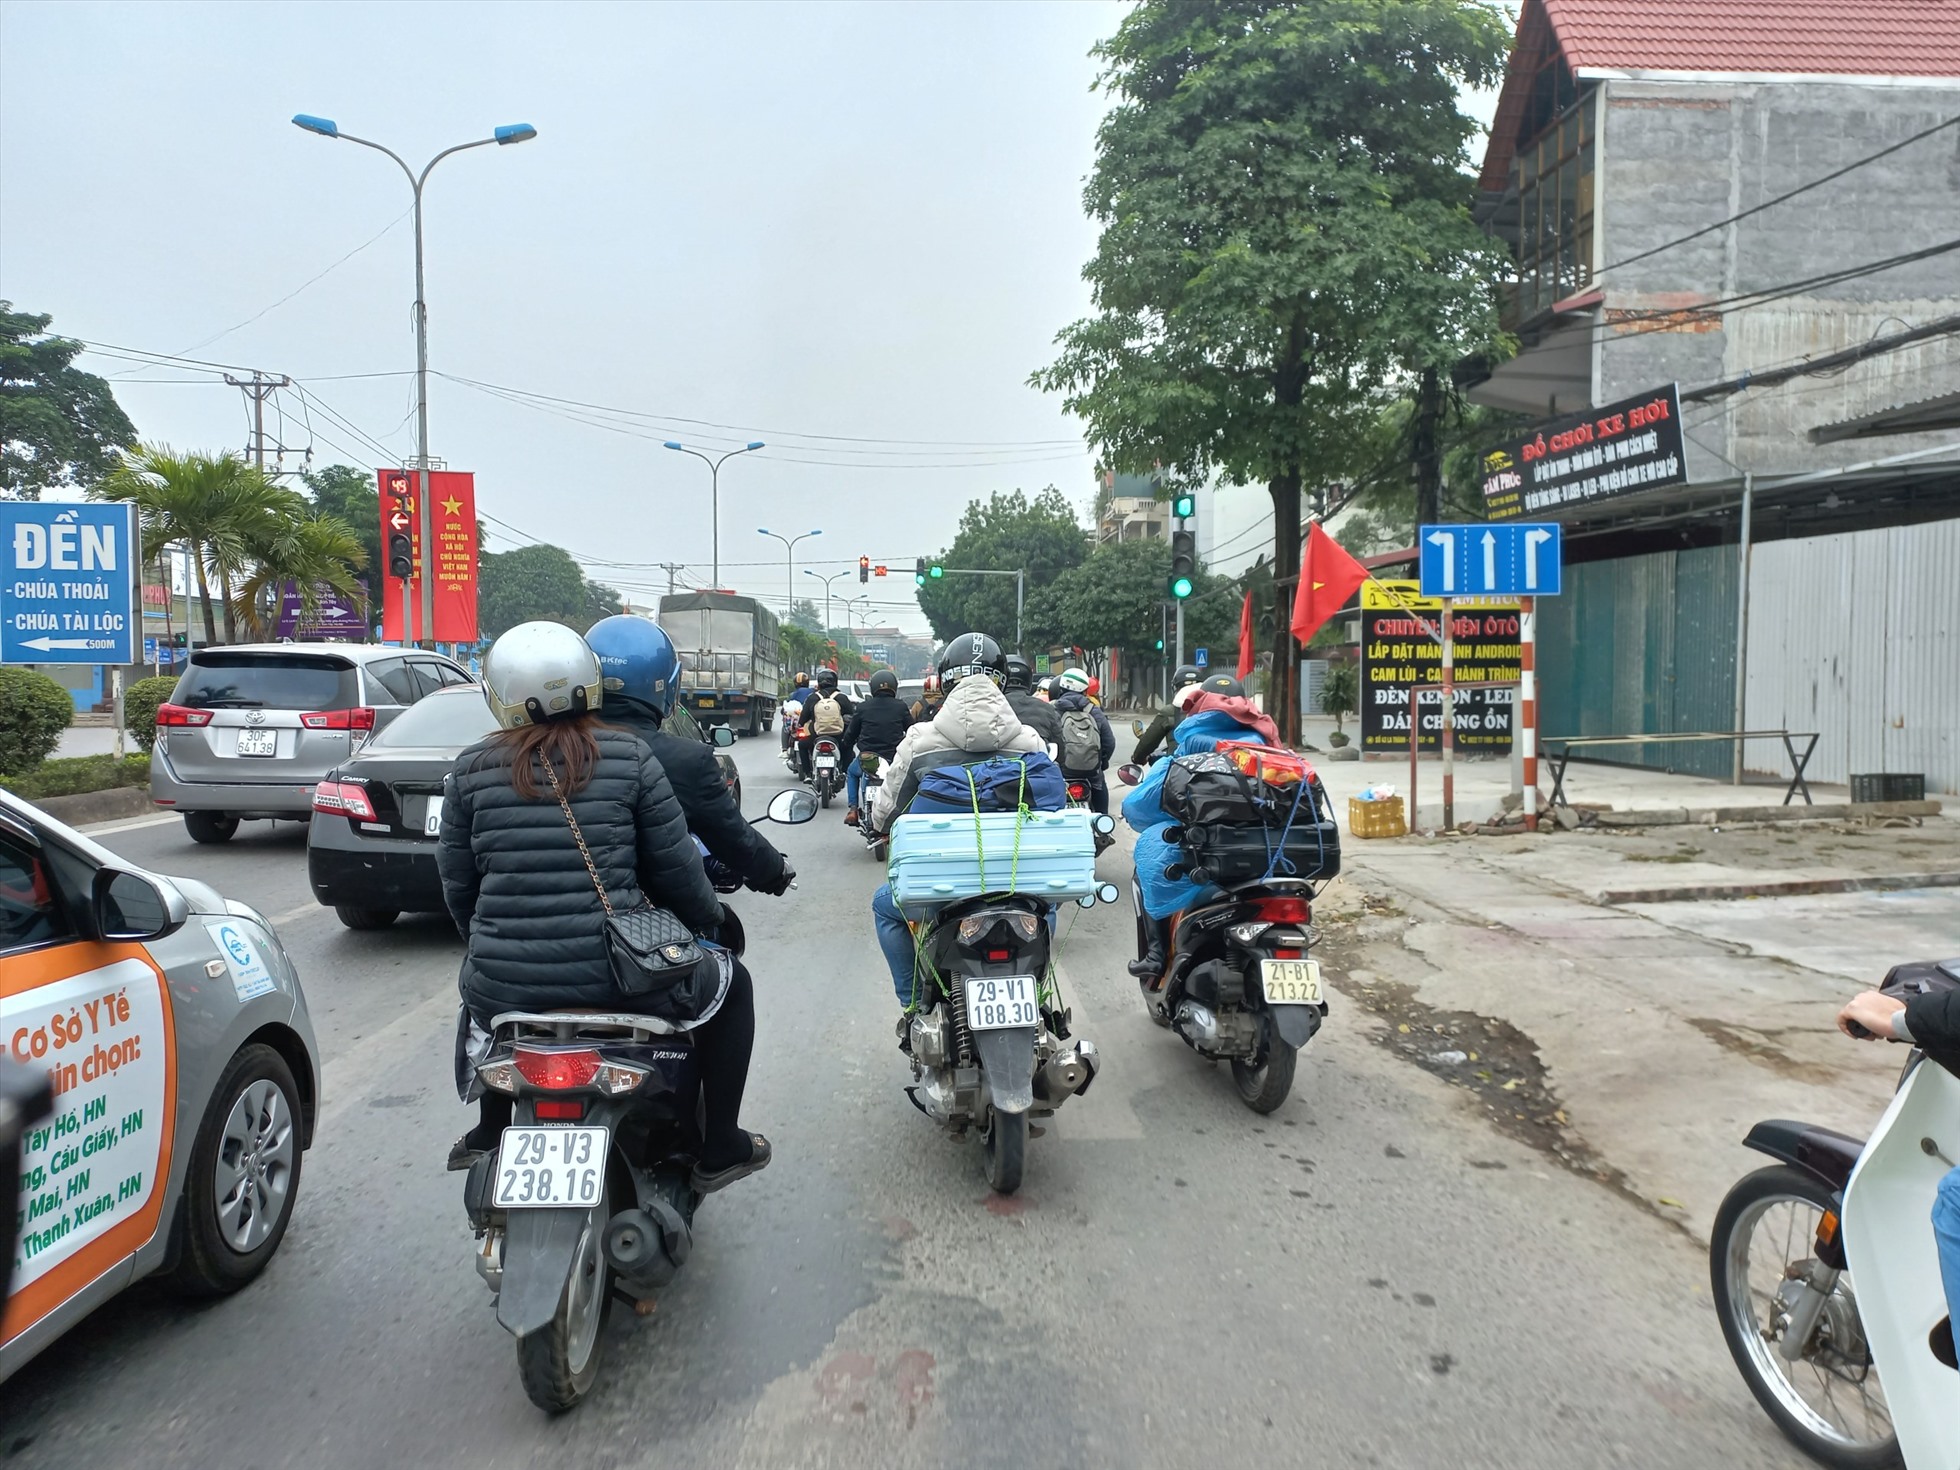 Nhiều người quyết định di chuyển bằng xe máy để tránh cảnh chen chúc trên đường quay lại Hà Nội. Ảnh: Lương Hạnh.